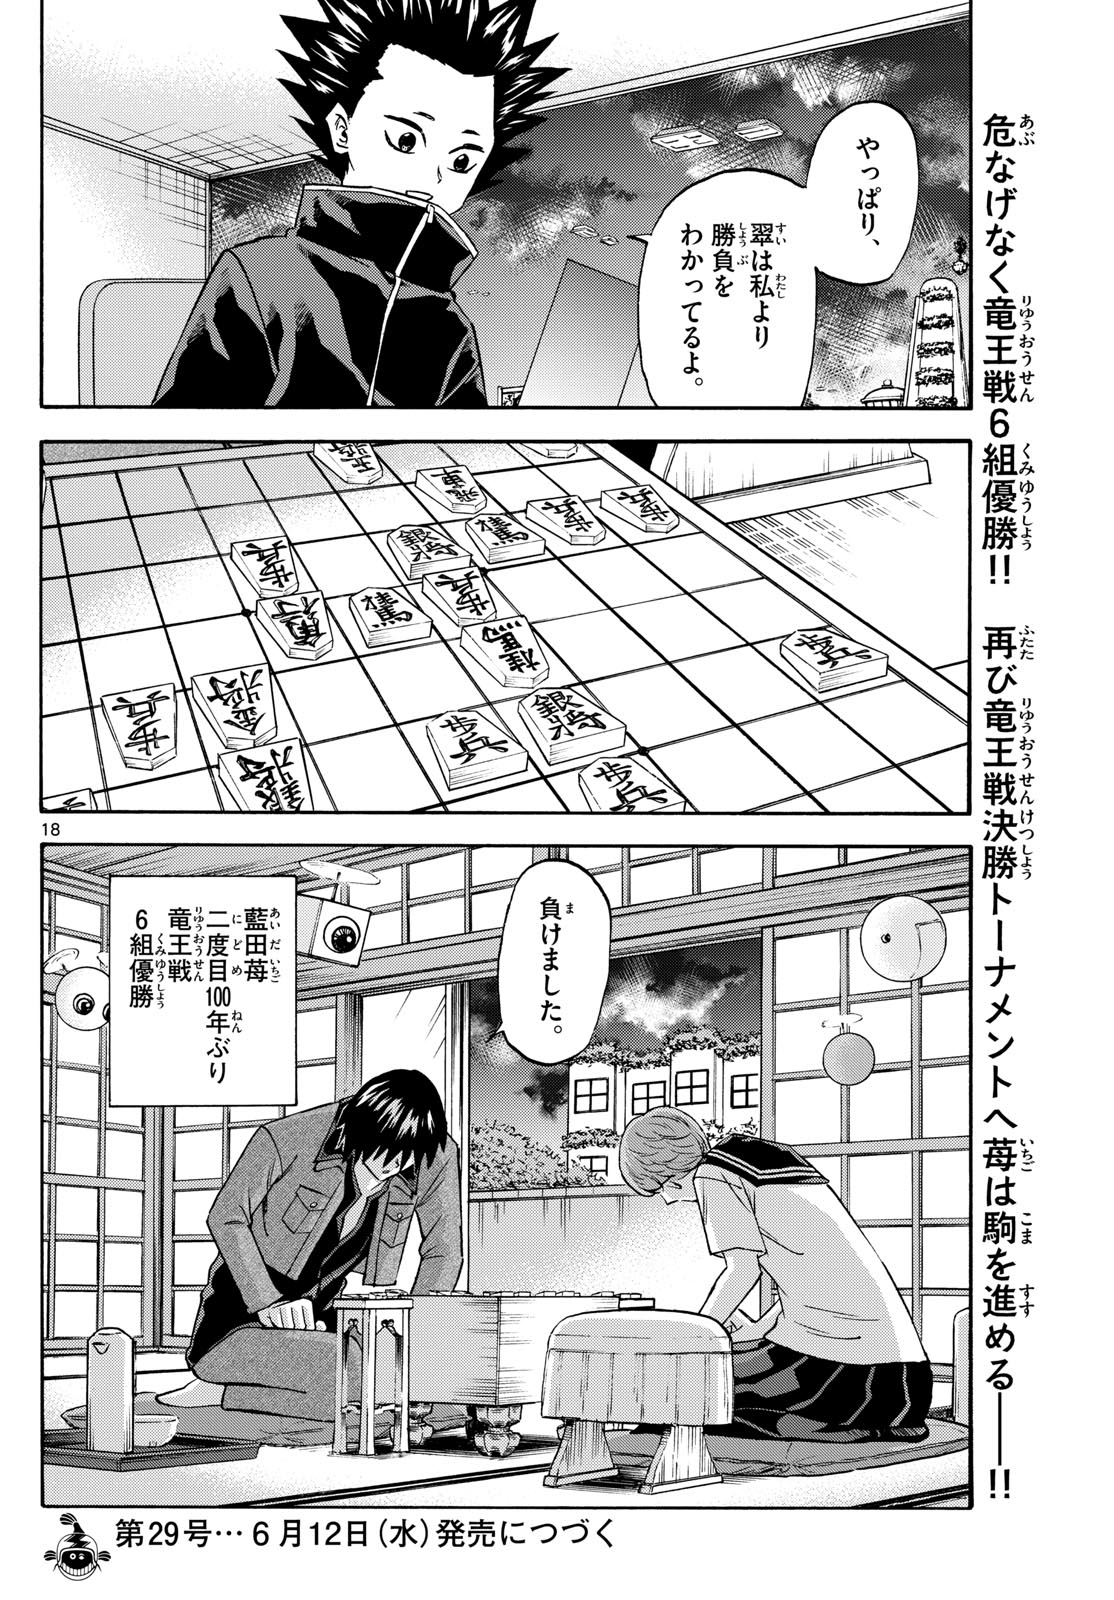 Tatsu to Ichigo - Chapter 194 - Page 18